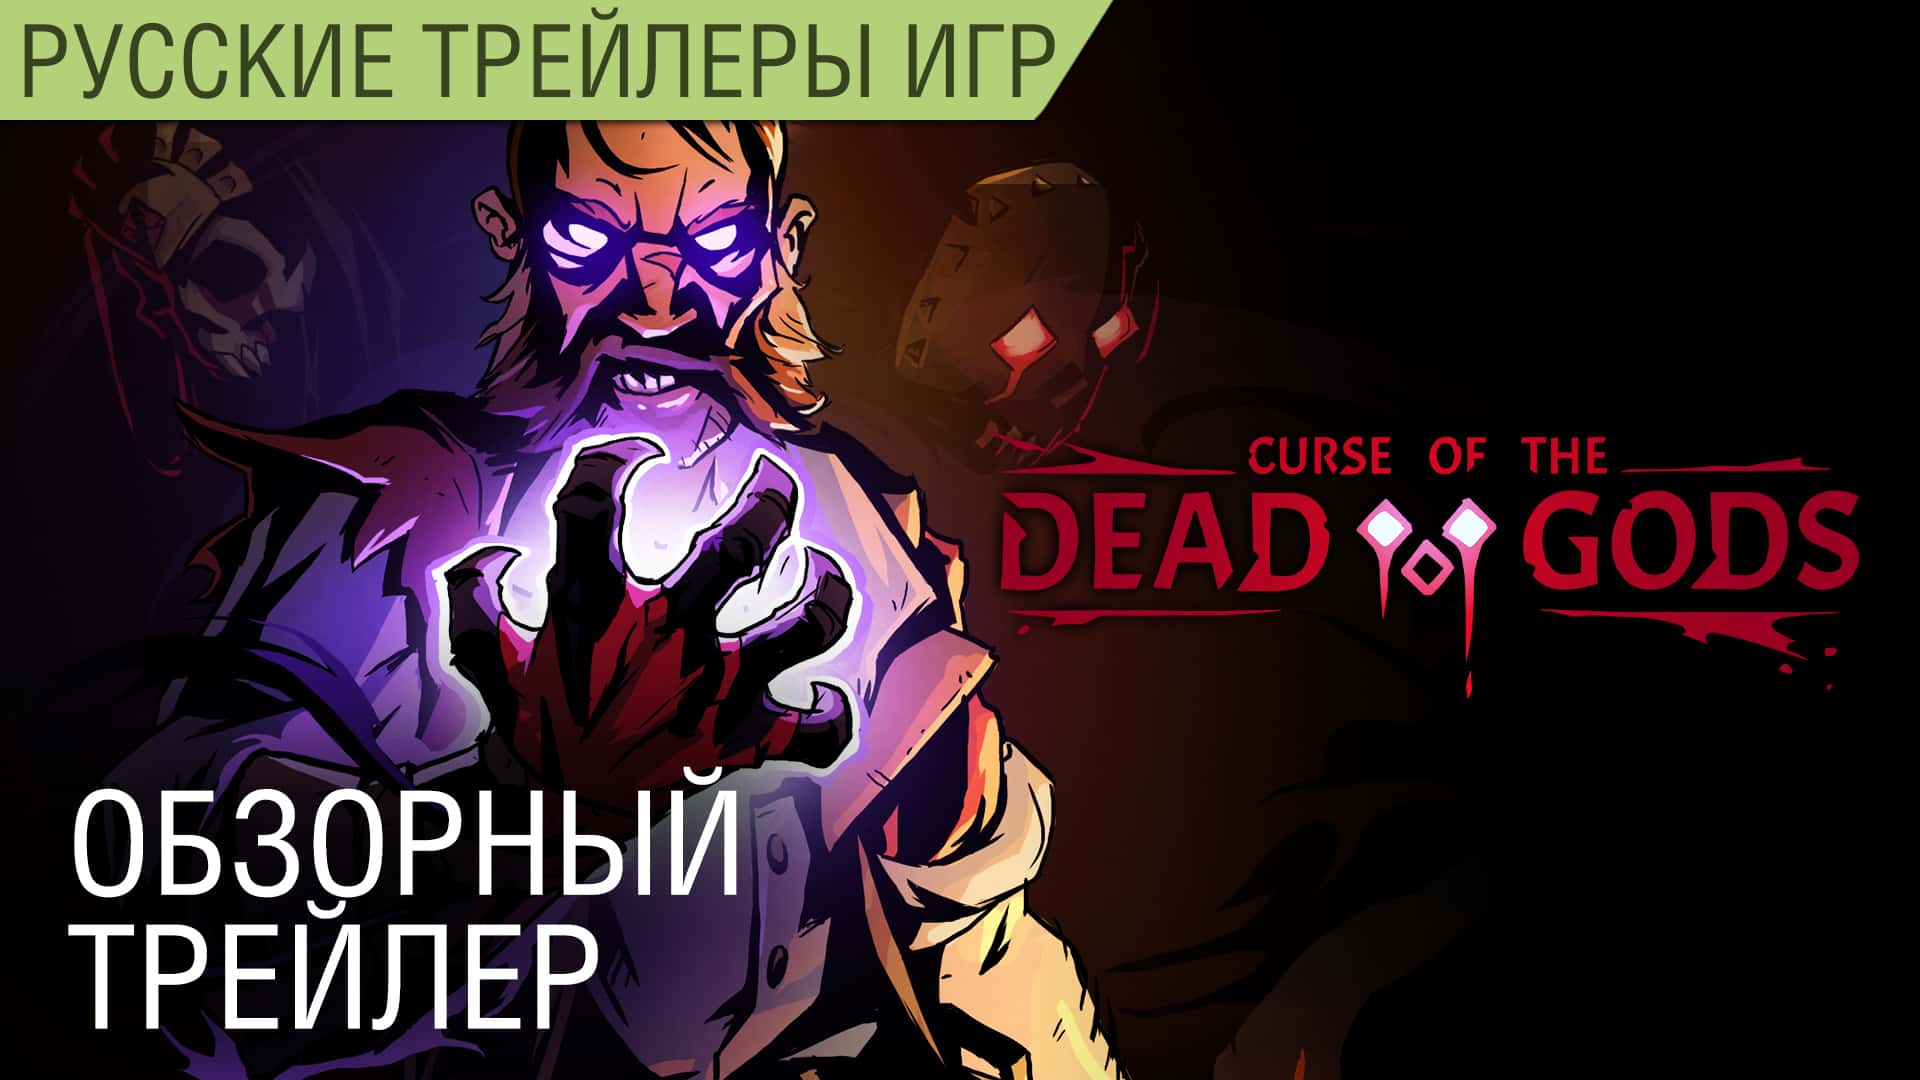 Curse of the Dead Gods - Особенности геймплея на русском